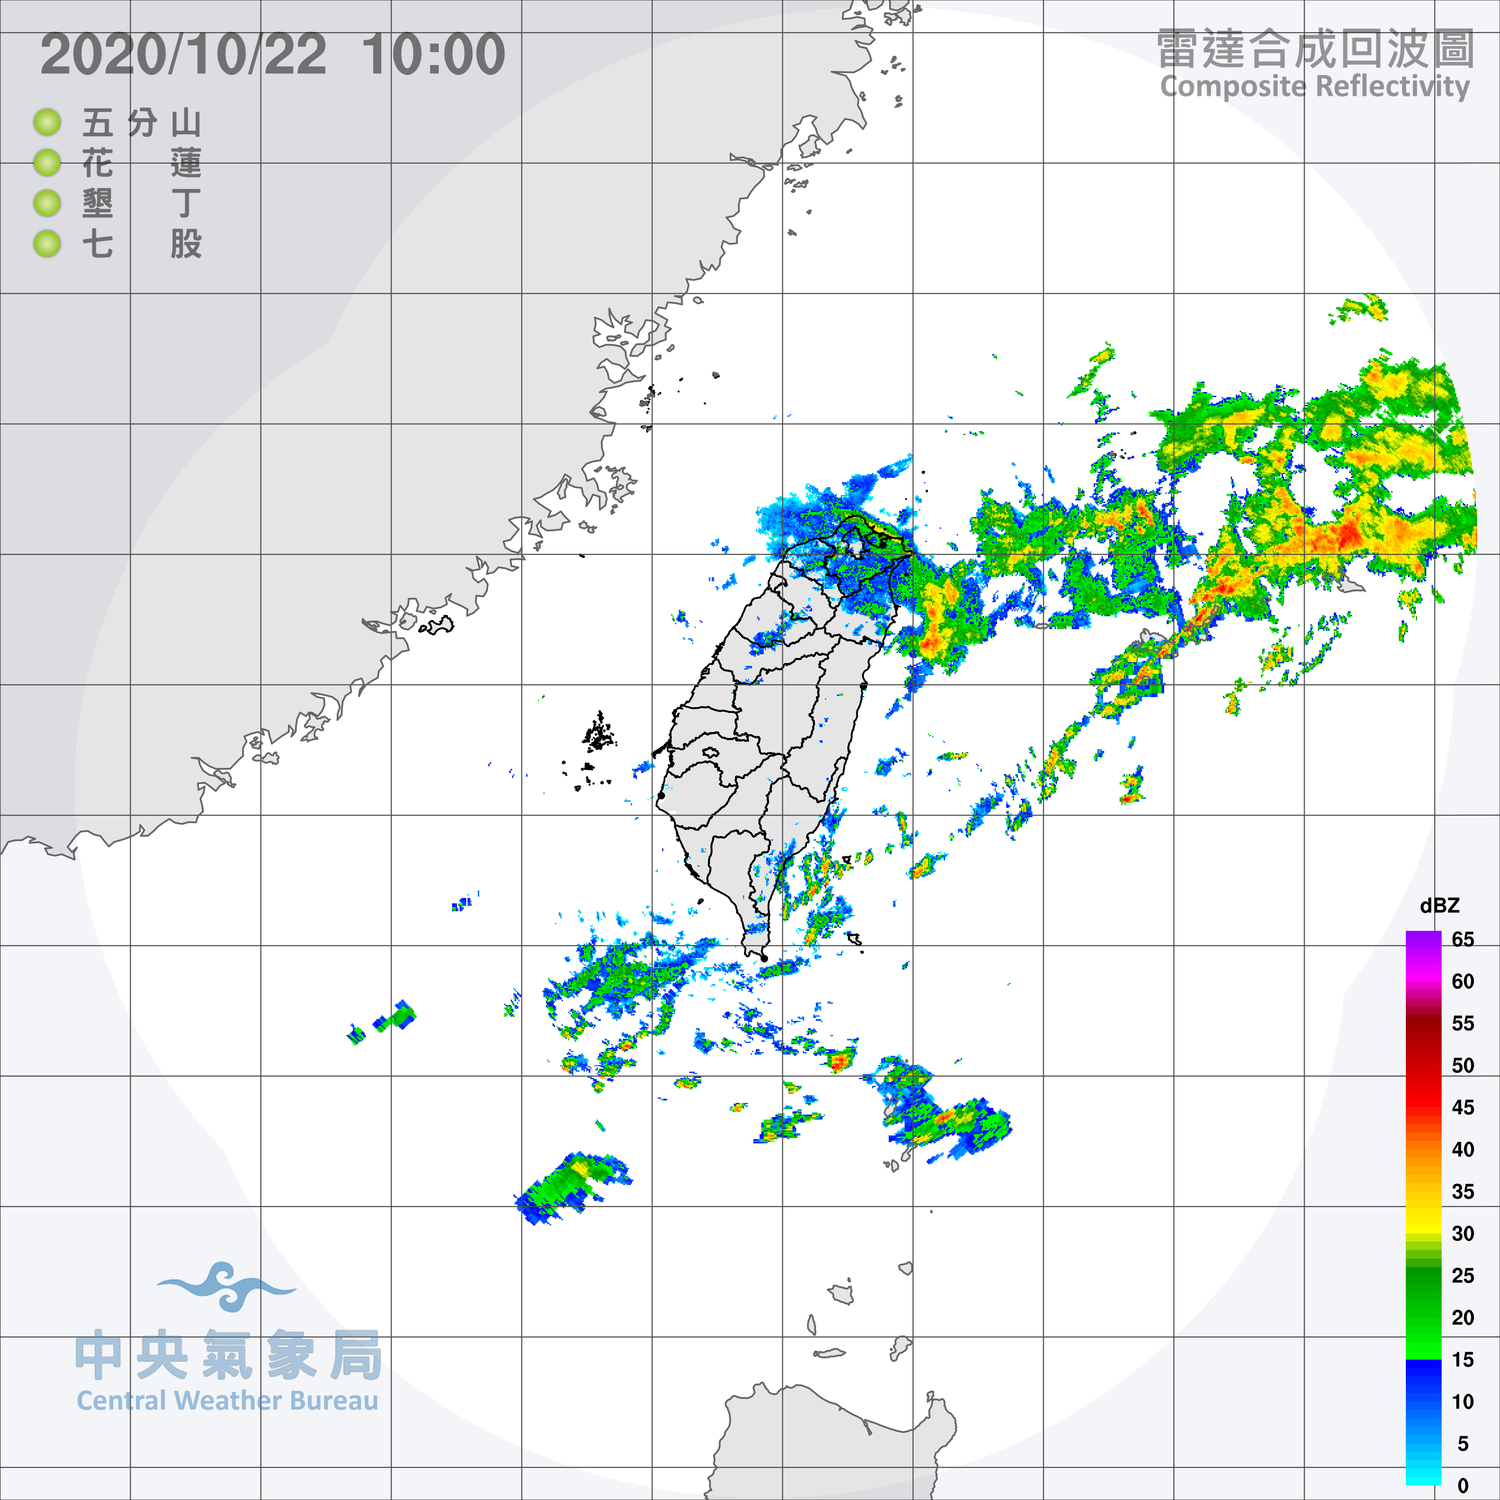 外出帶雨具！颱風外圍環流雨彈來襲 北北基升級大豪雨